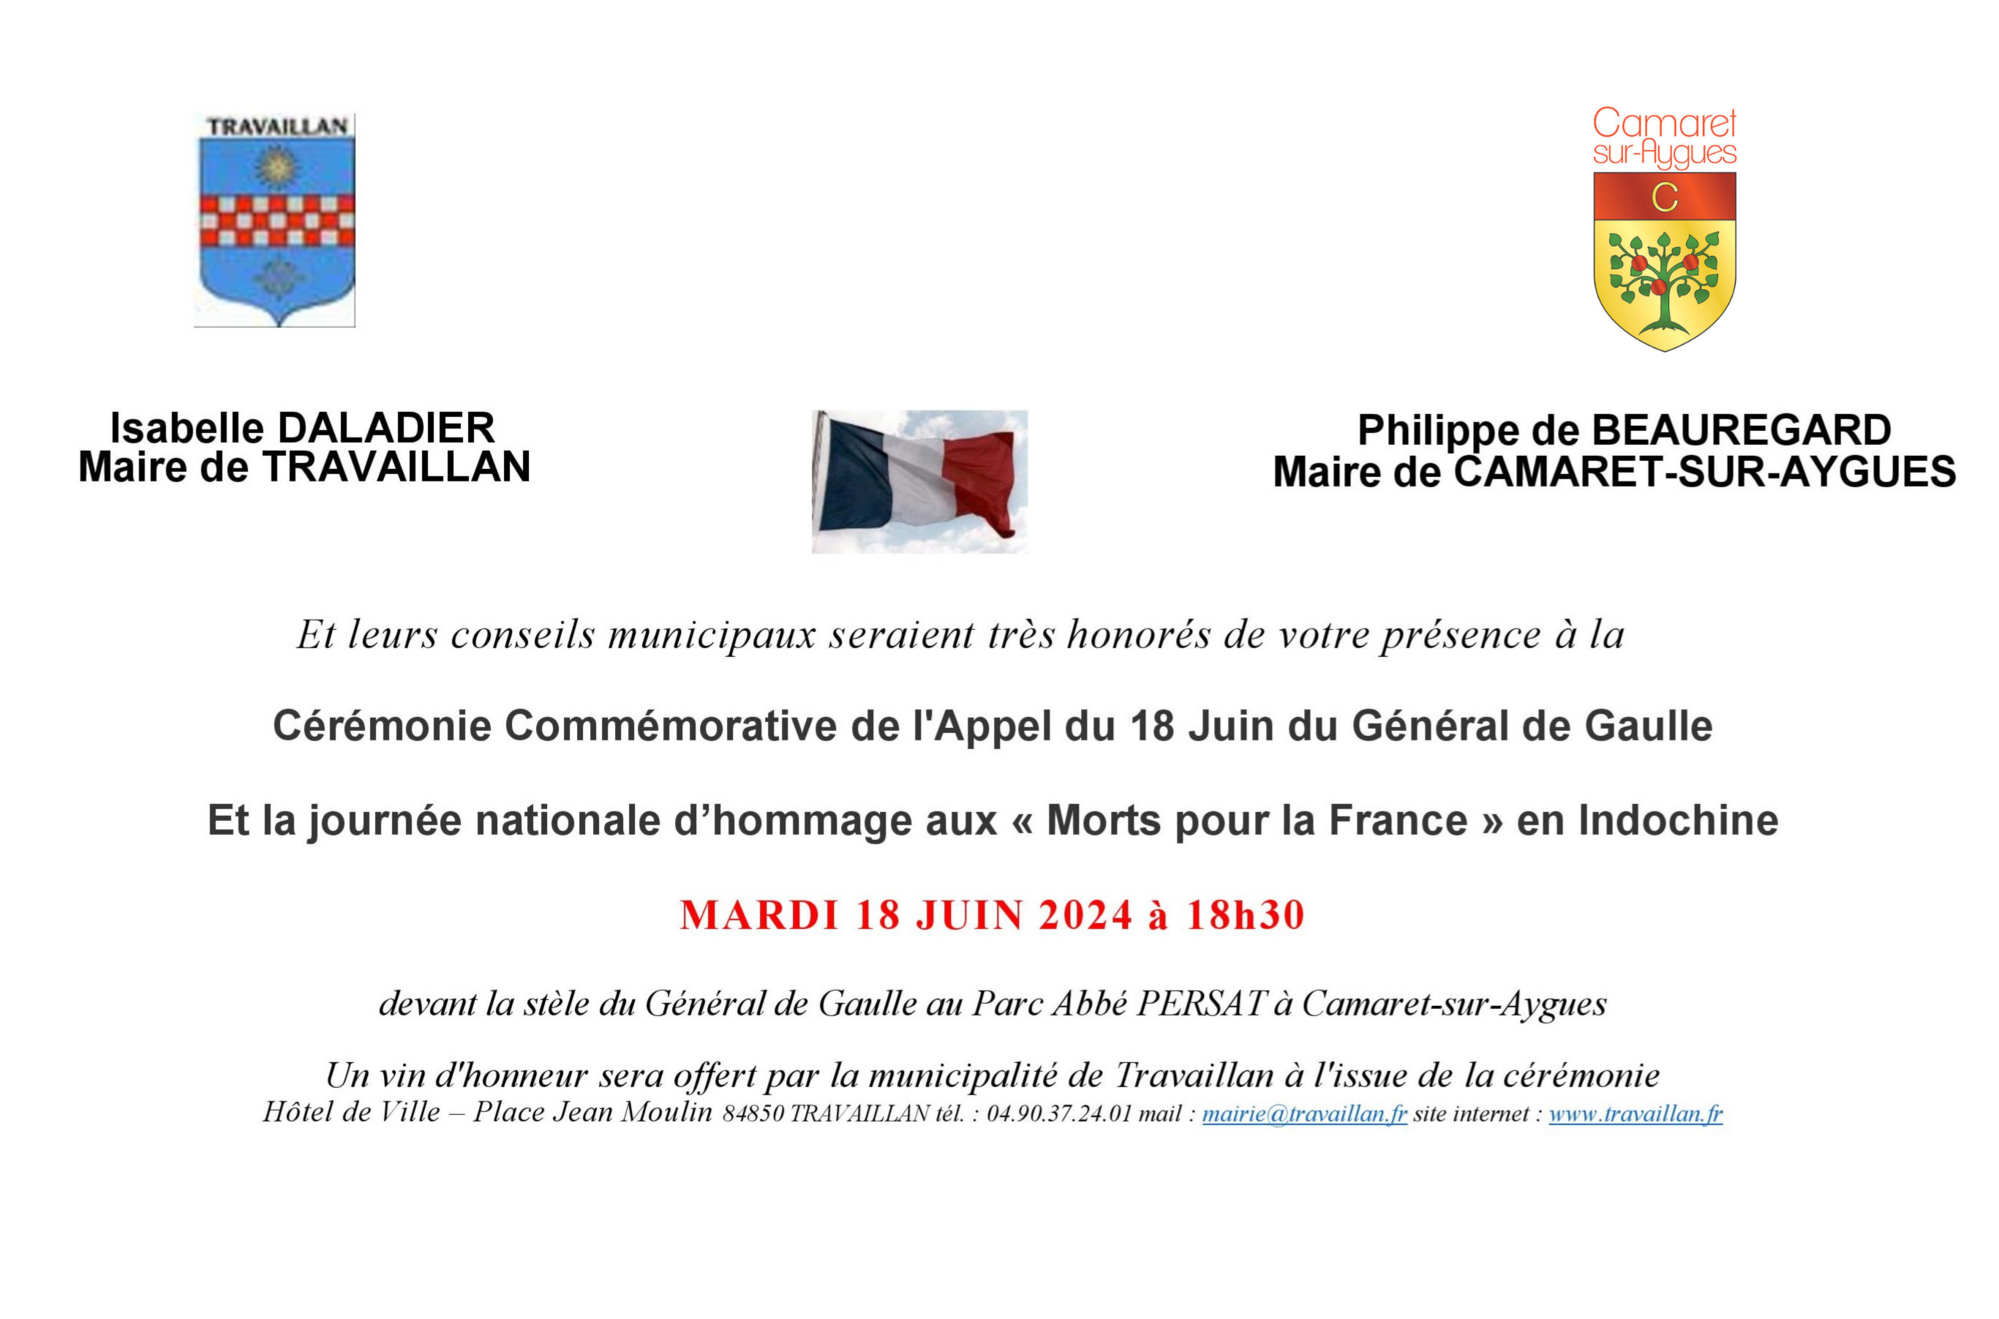 84ème anniversaire de l'Appel du 18 juin 1940 et de l'Hommage aux « Morts pour la France » en Indochine le mardi 18 juin à 18h30 devant la Stèle du Général de Gaulle au parc Persat à Camaret